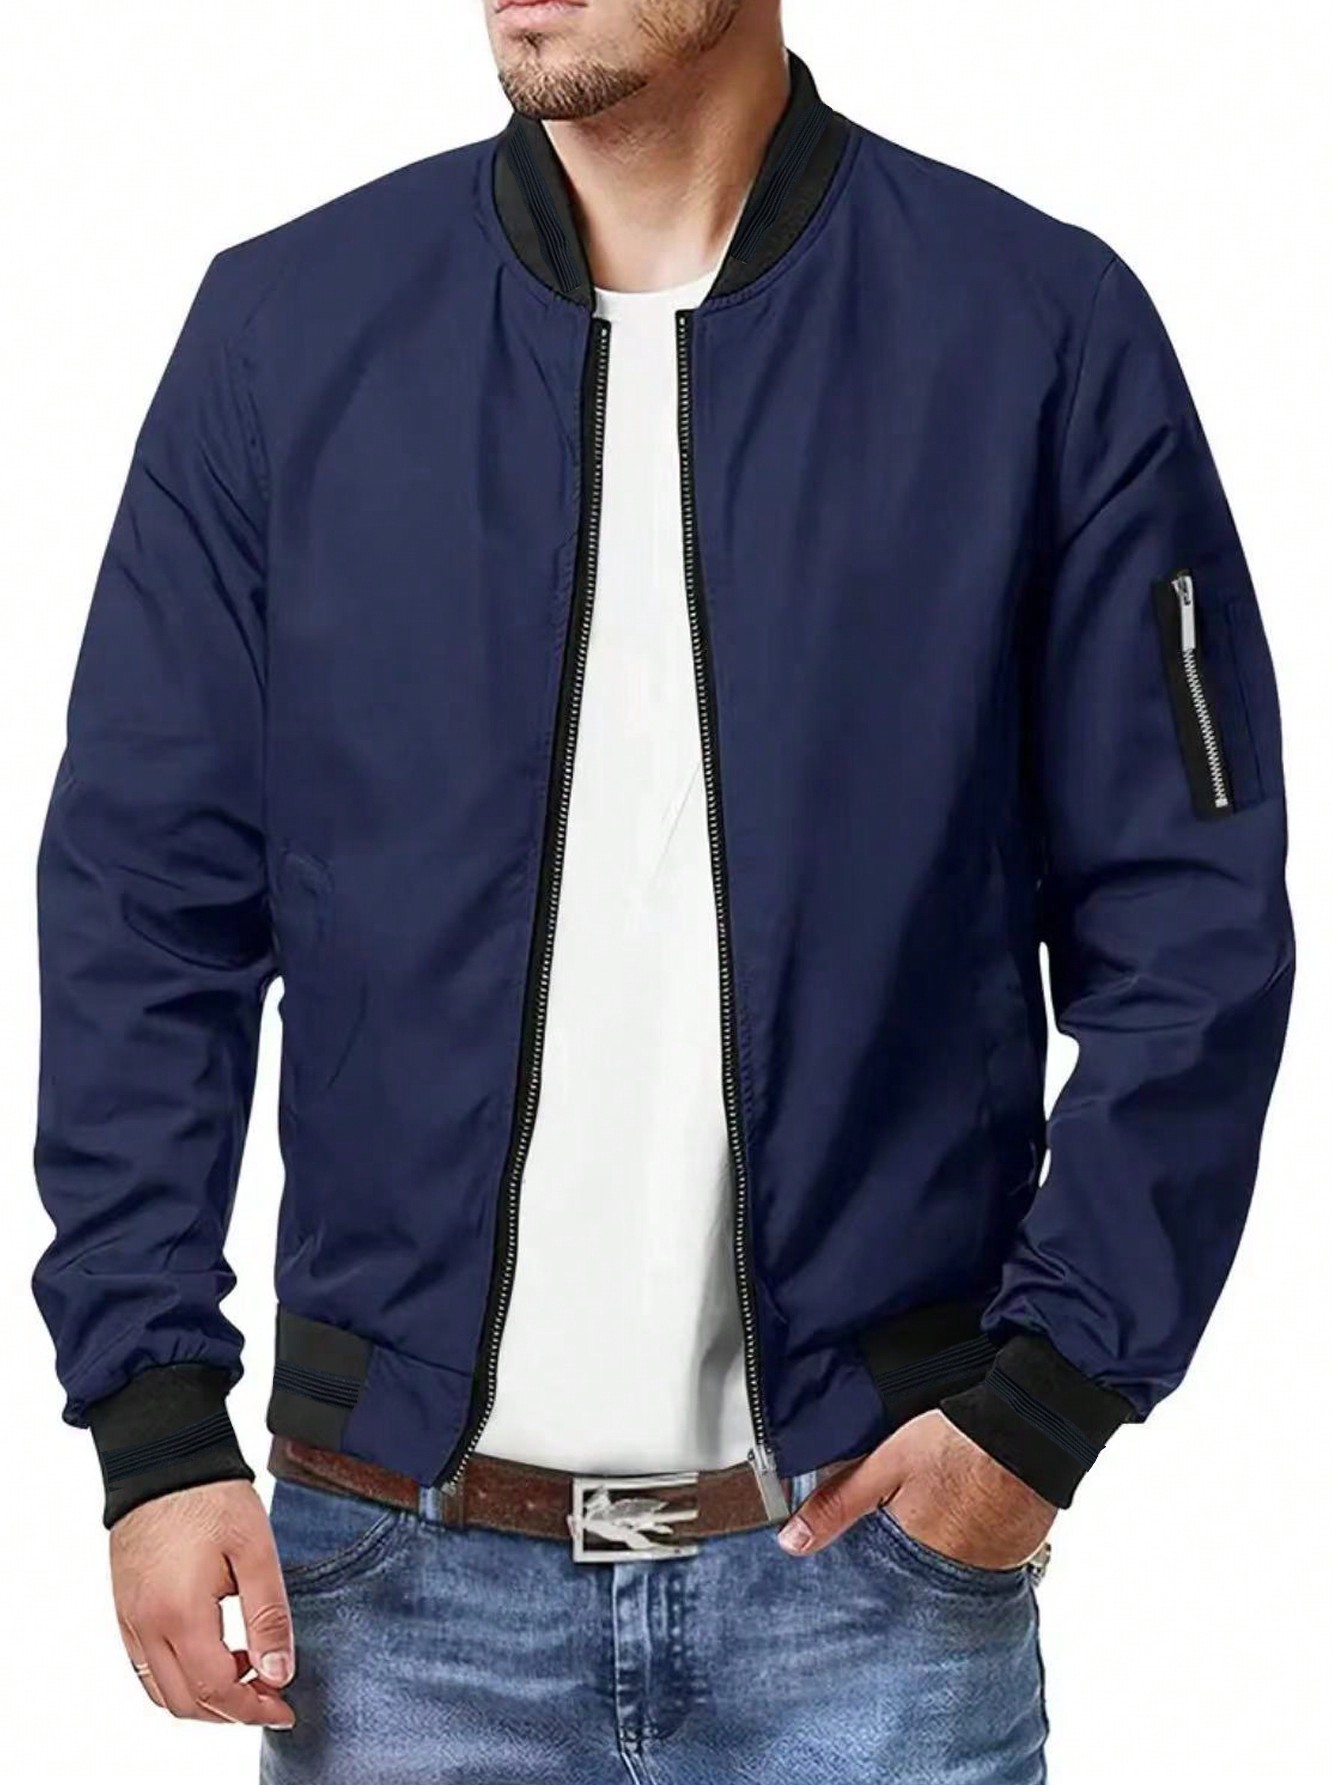 Мужская повседневная спортивная куртка на молнии с воротником-стойкой, темно-синий удобная мужская куртка плотный теплый кардиган мужская куртка с отложным воротником однобортный дизайн модная повседневная одежда